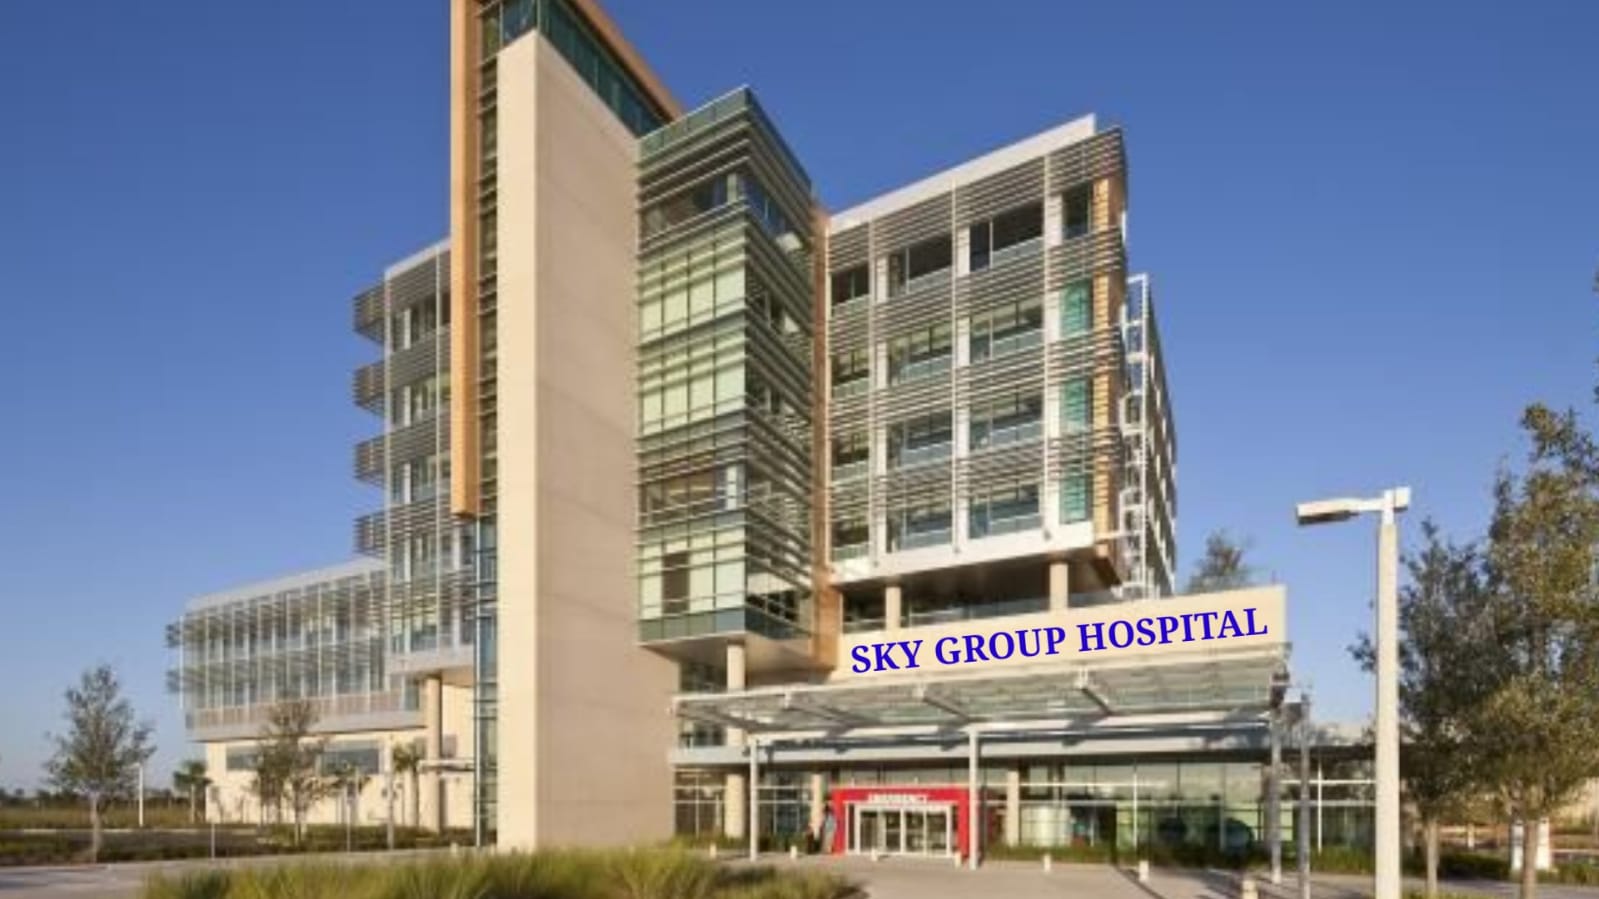 Sky Group Hospital